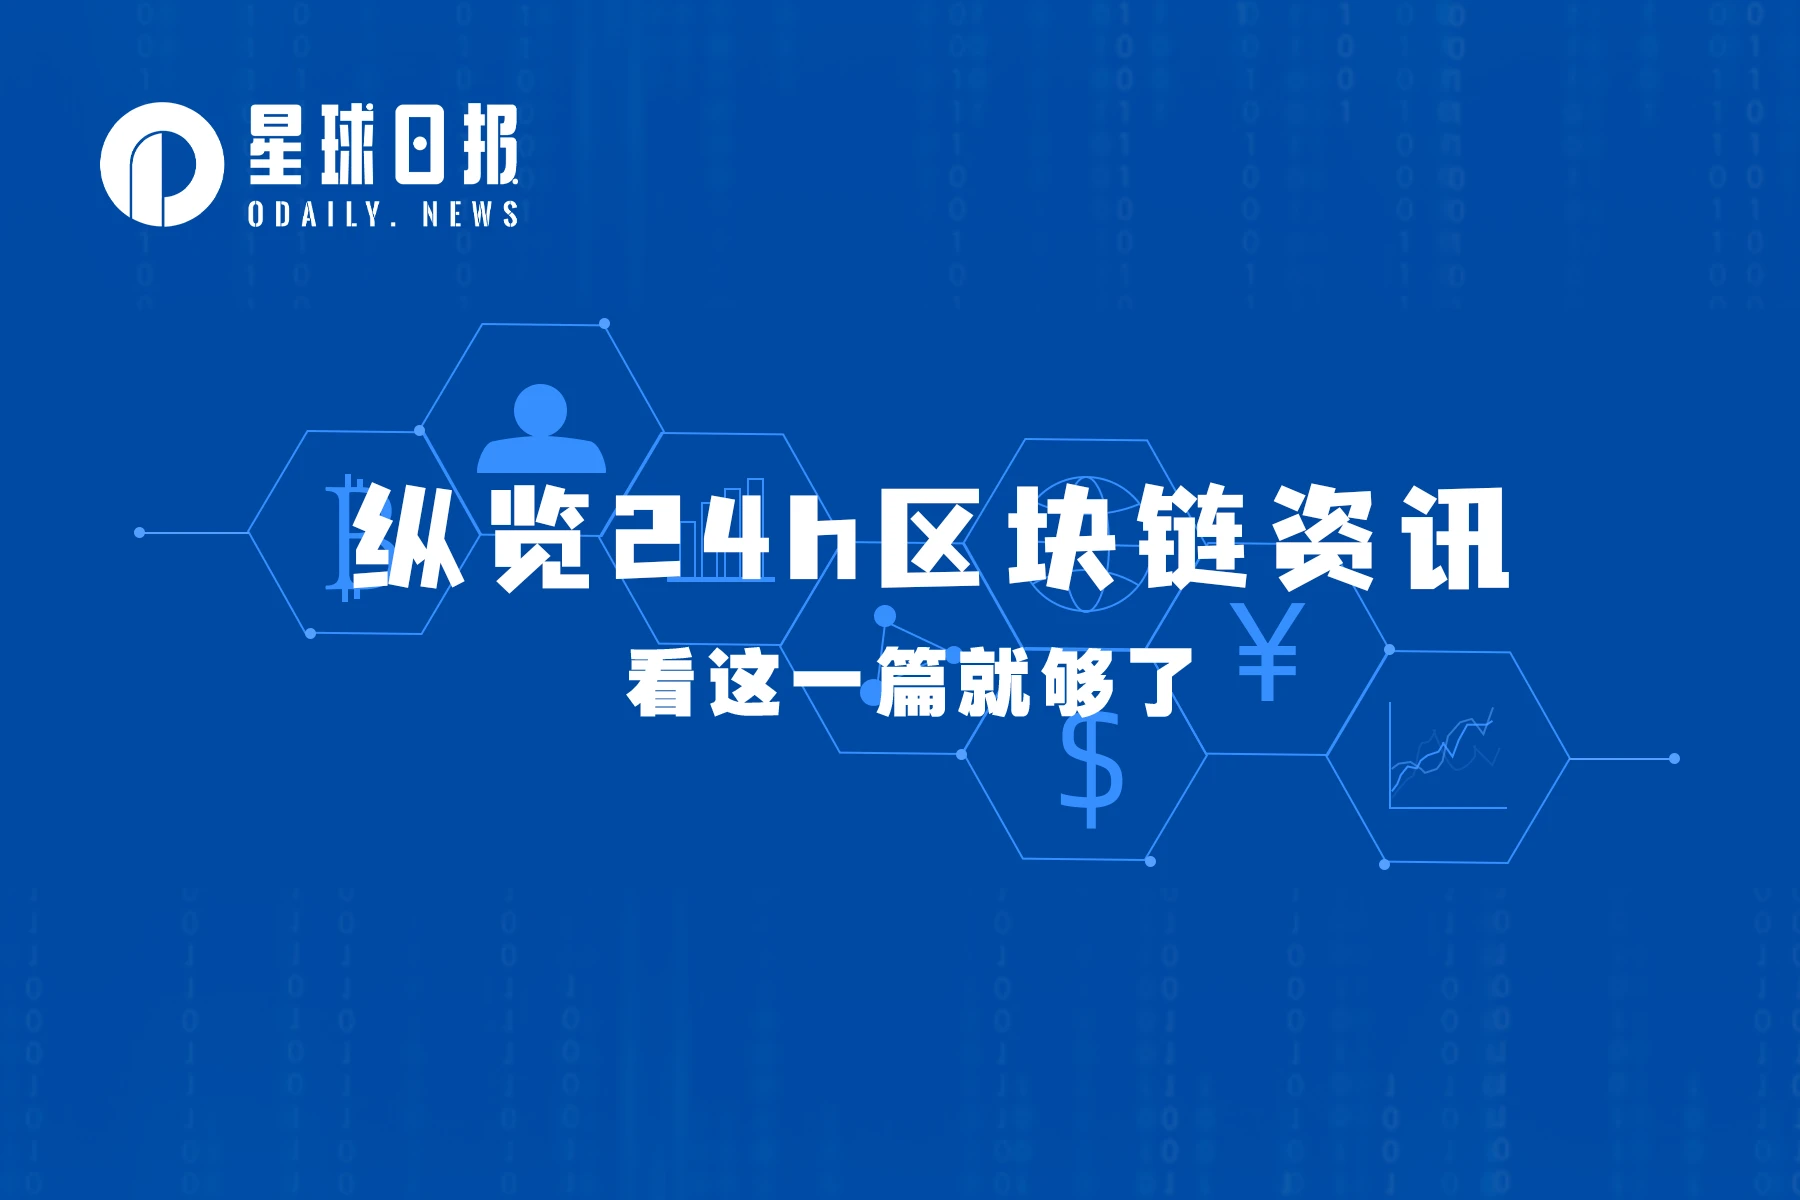 星球日报 | 香港将从6月起实施虚拟资产交易监管规定；LayerZero称暂无空投计划（5月24日）